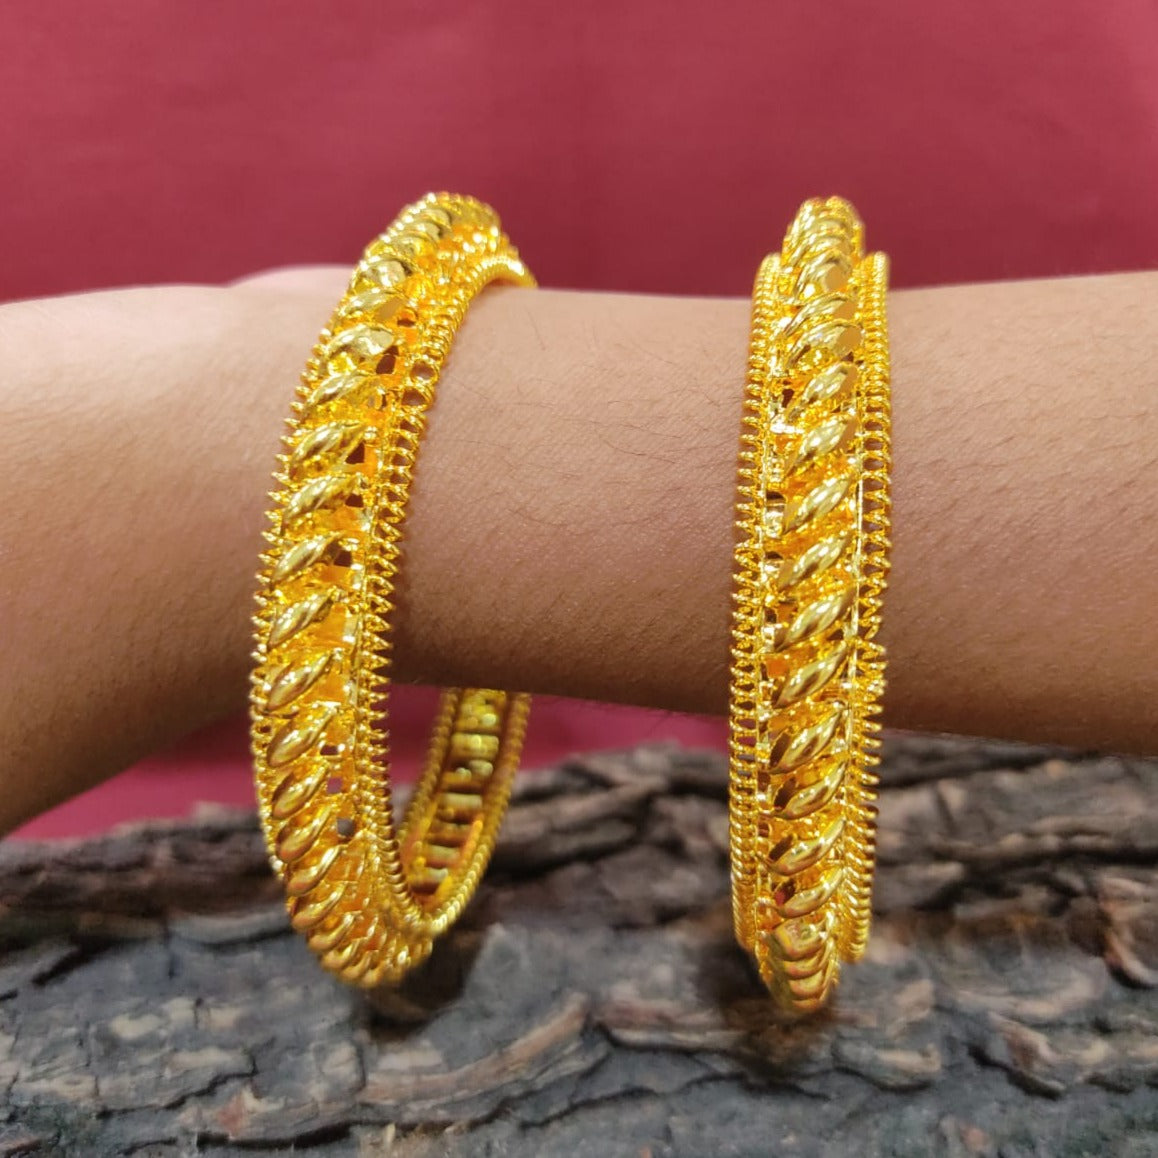 Buy Heavy Men's Wear Gold Plated Imitation Bracelet Best Selling Jewelry  Online